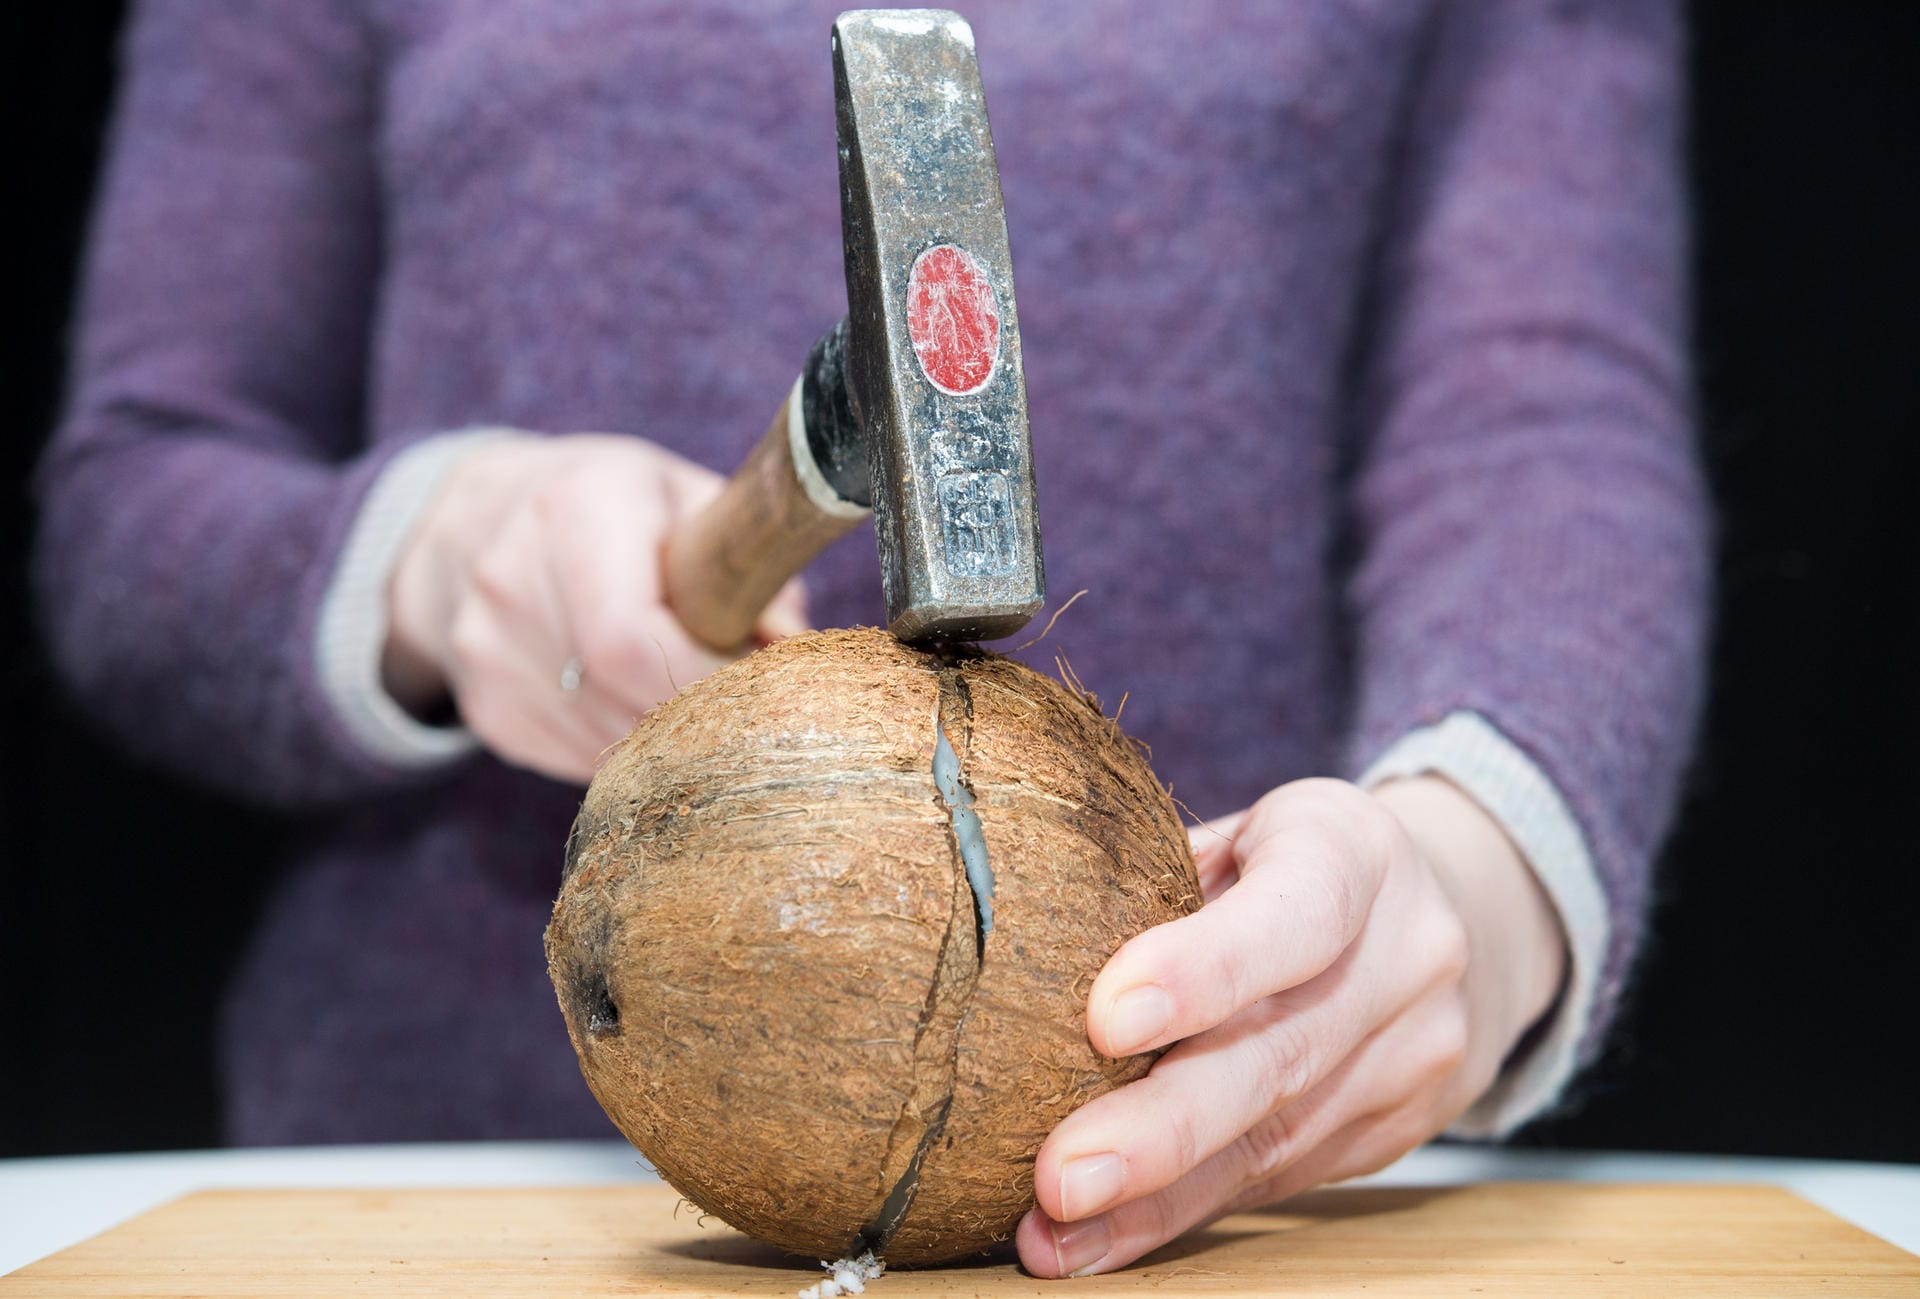 Kokosnuss: Schritt 4 – Nach mehreren Schlägen entsteht ein Riss in der Kokosnussschale.